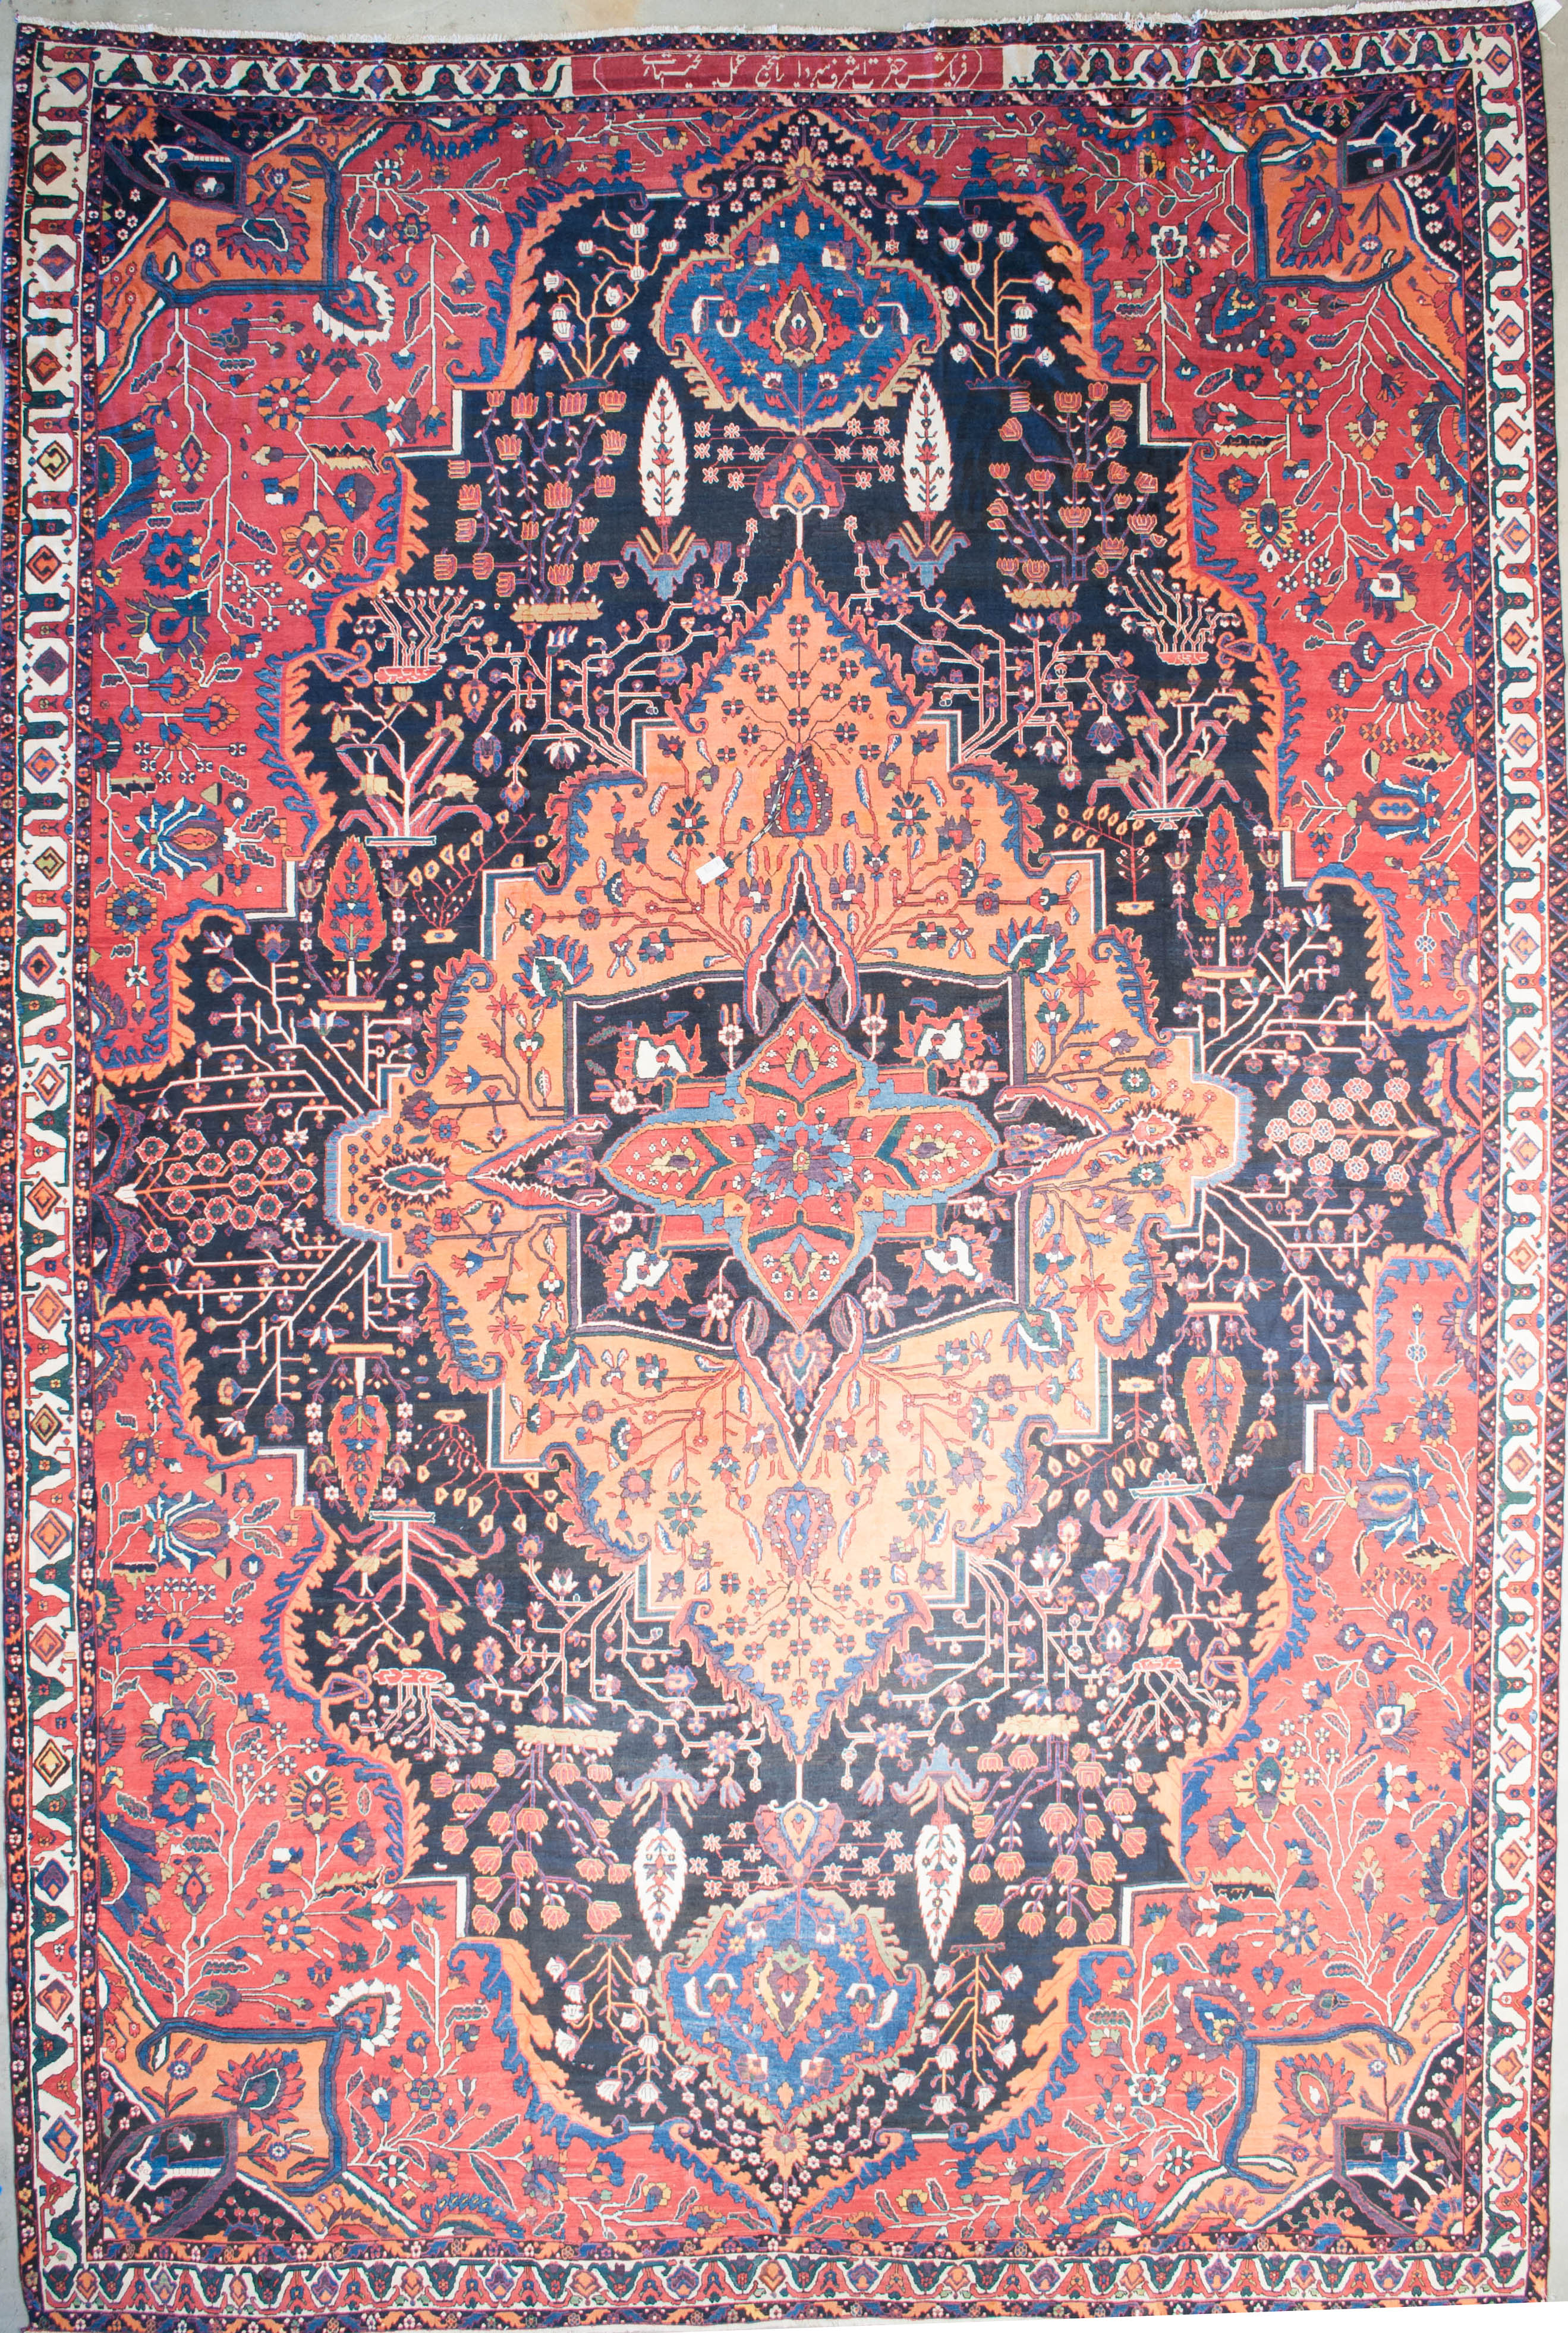 Unique Antique Bakhtairi Commissioned Carpet - Rugs & More, Santa Barbara Design Center in Santa Barbara, California. Beautiful Antique rug.